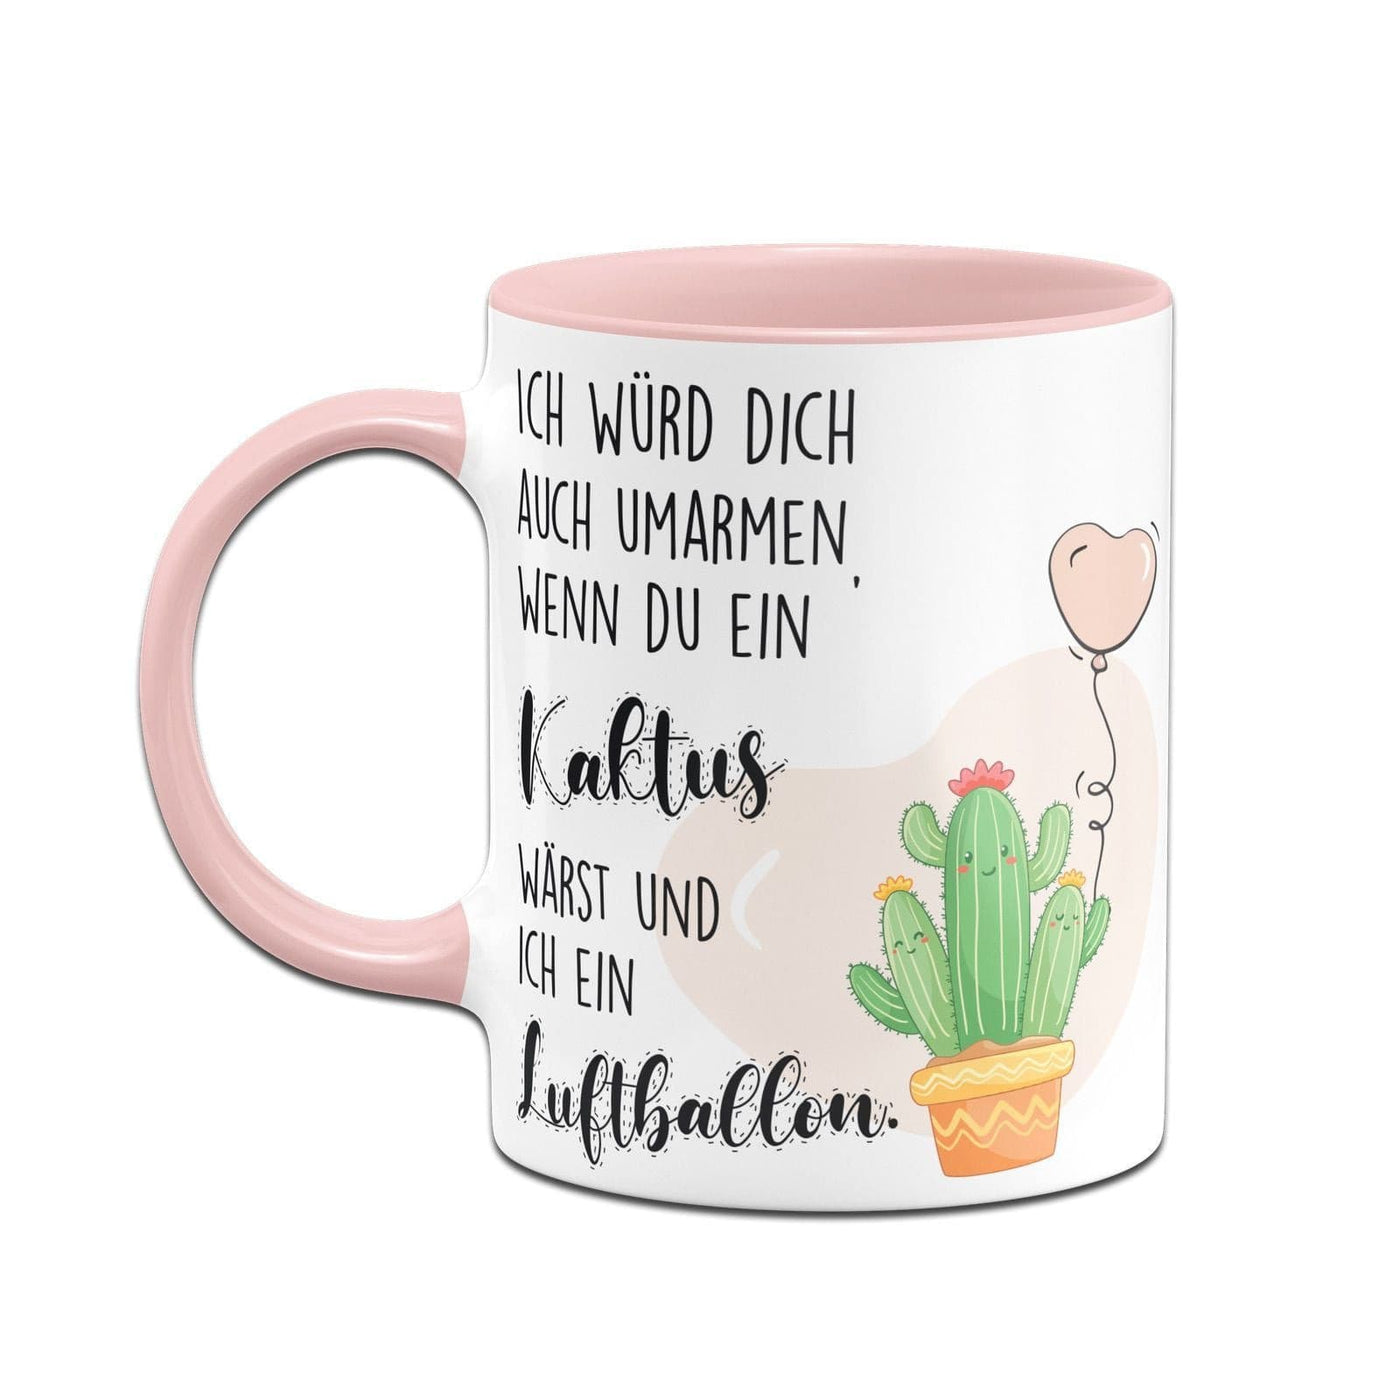 Bild: Tasse - Ich würde Dich auch umarmen wenn Du ein Kaktus wärst und ich ein Luftballon Geschenkidee